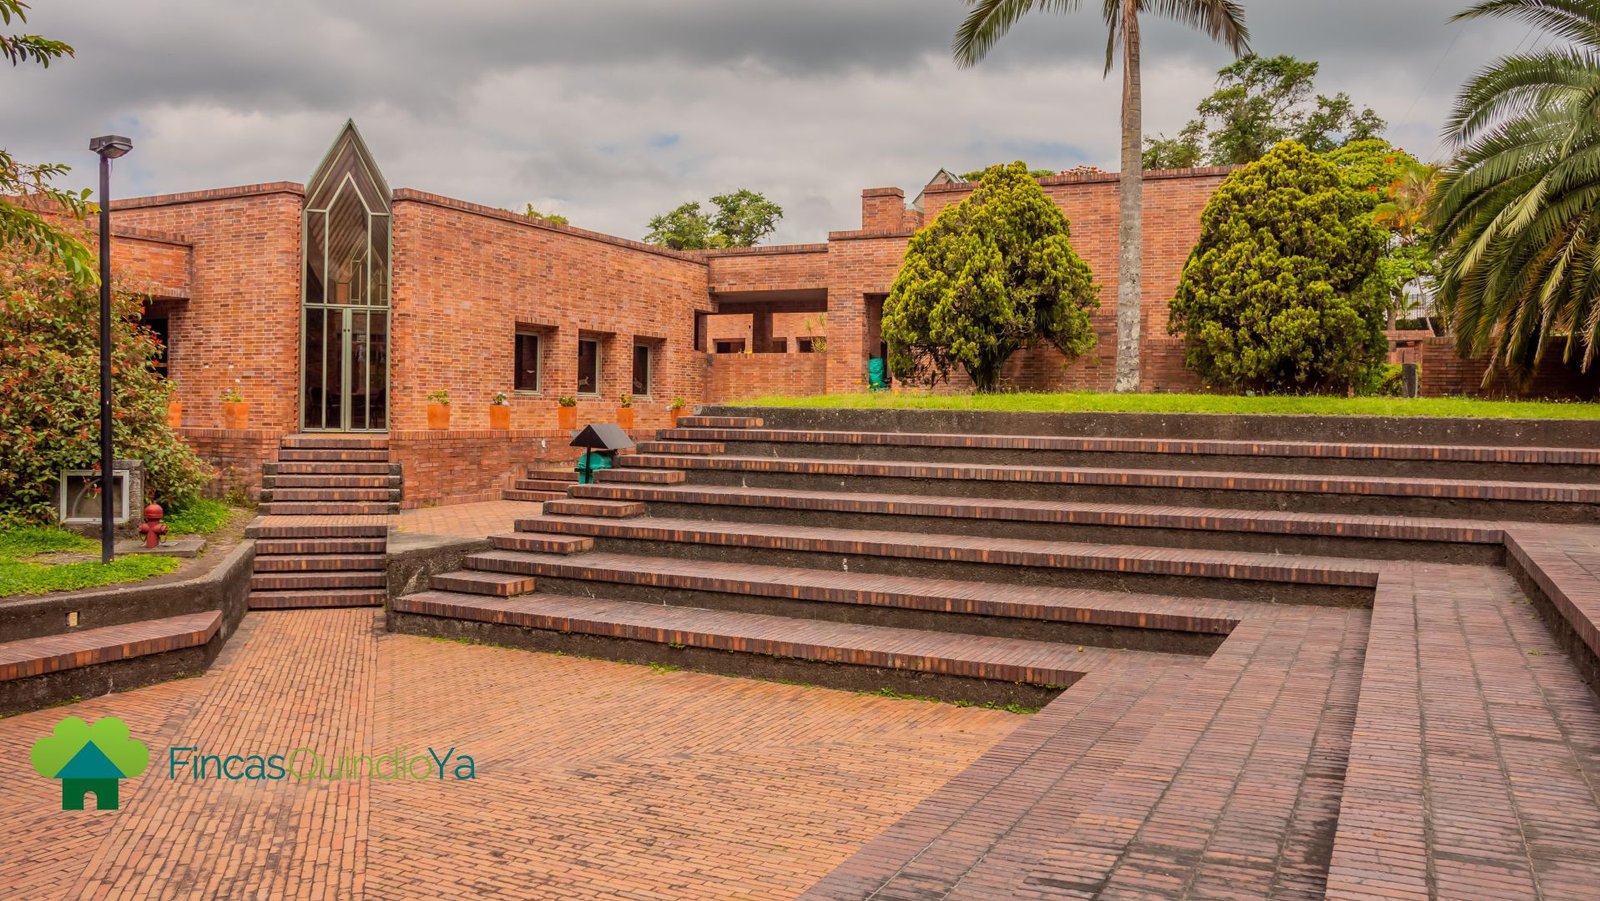 Escaleras en forma de cuadro y árboles alrededor en el Museo del Oro Quimbaya